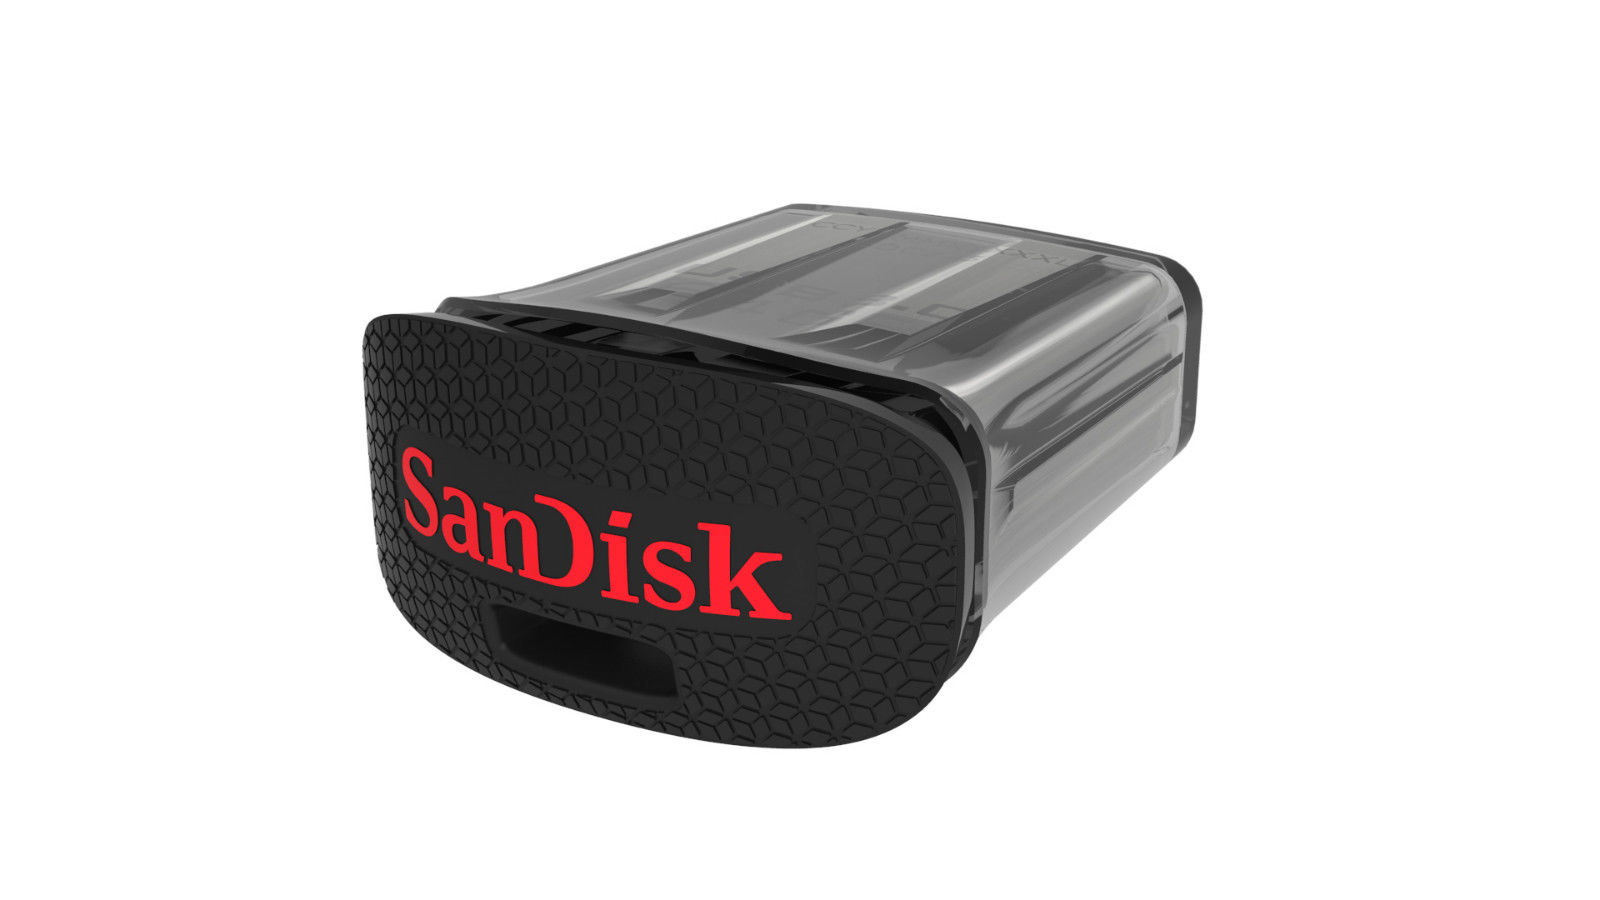 SANDISK CRUZER ULTRA FIT 32GB USB FLASH DRIVE USB 3.0